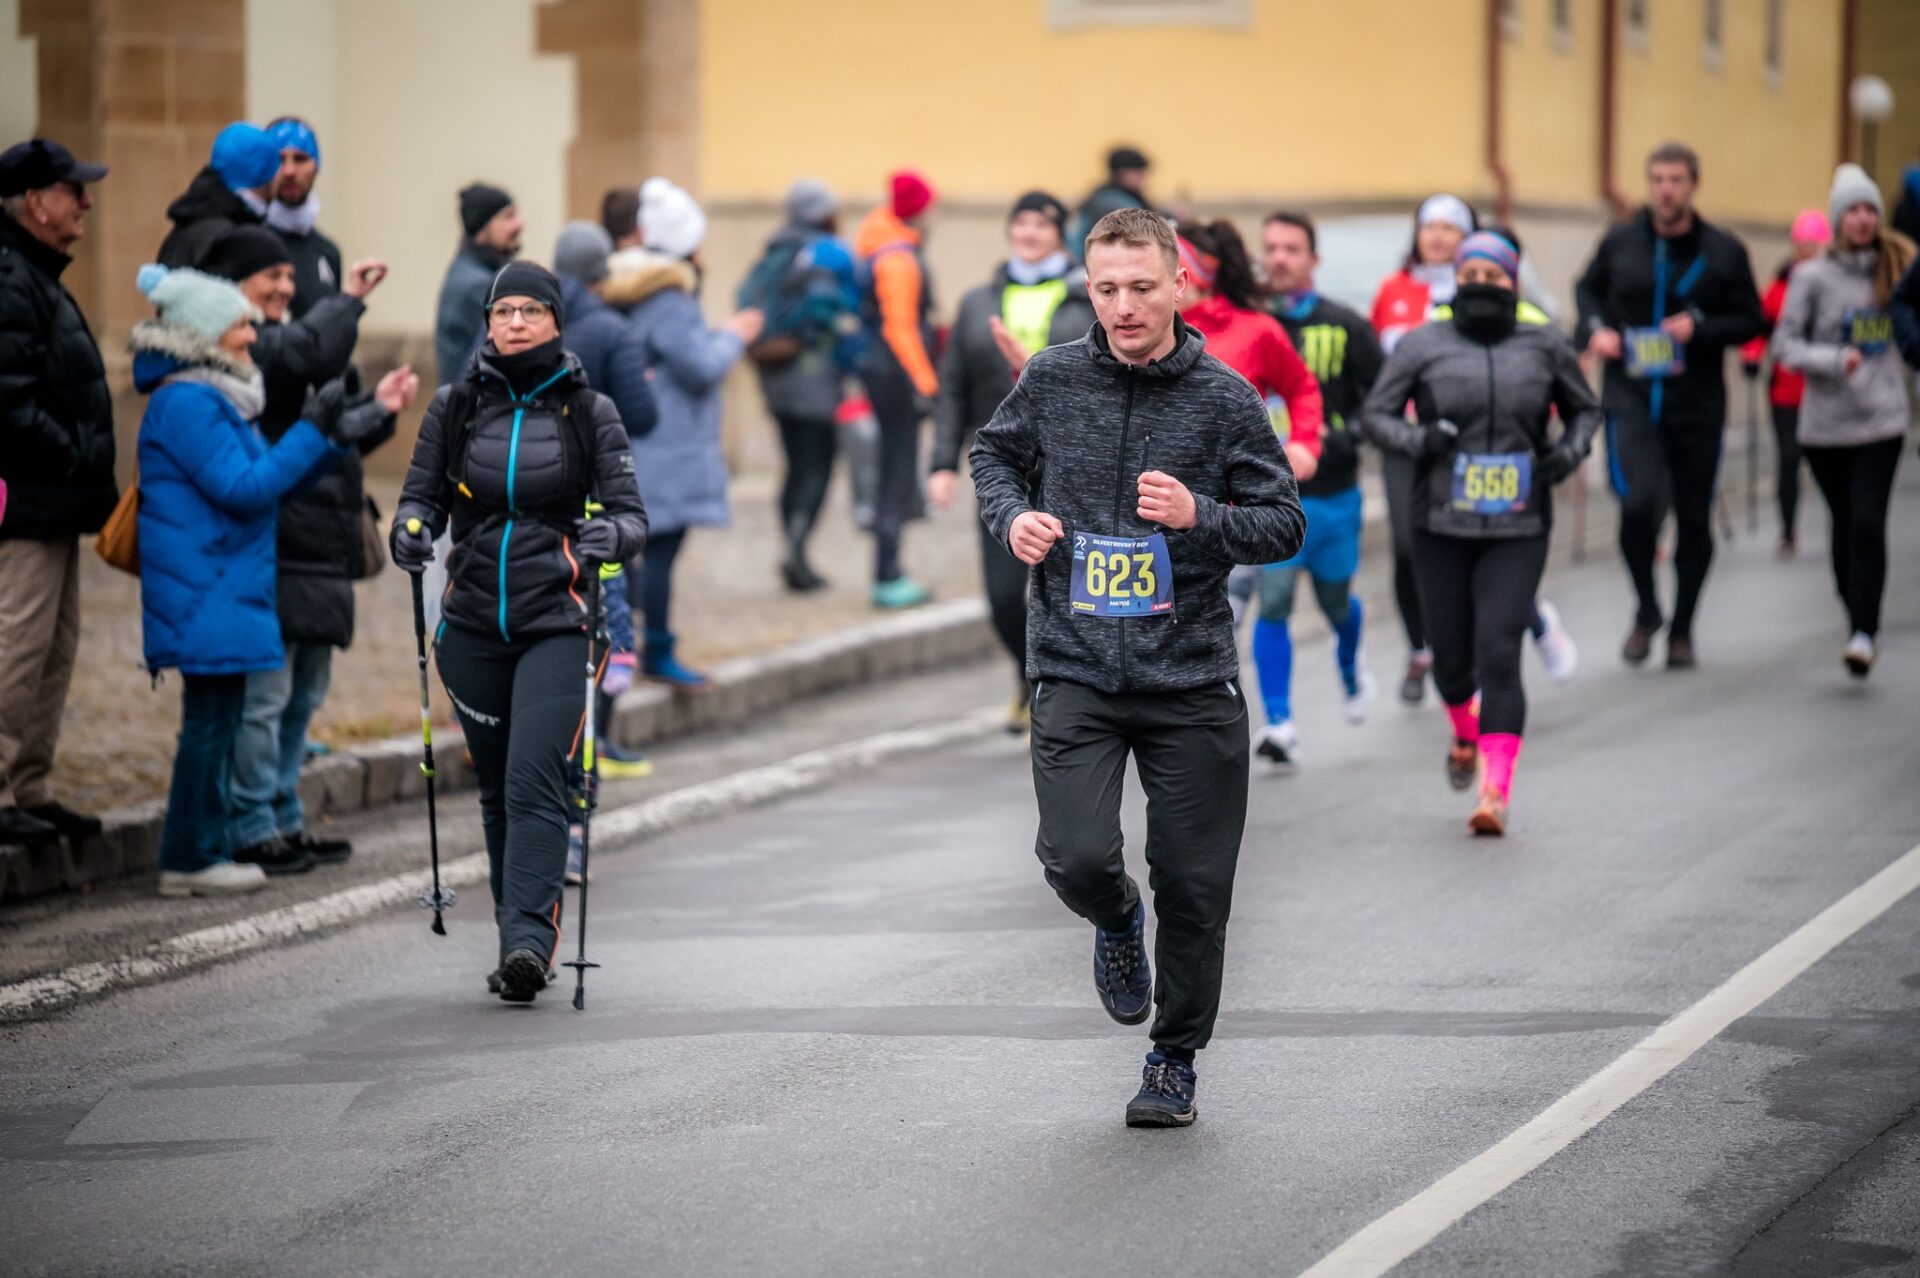 Silvestrovského behu v Prešove sa zúčastnilo vyše 780 bežcov! Toto sú tohtoroční víťazi